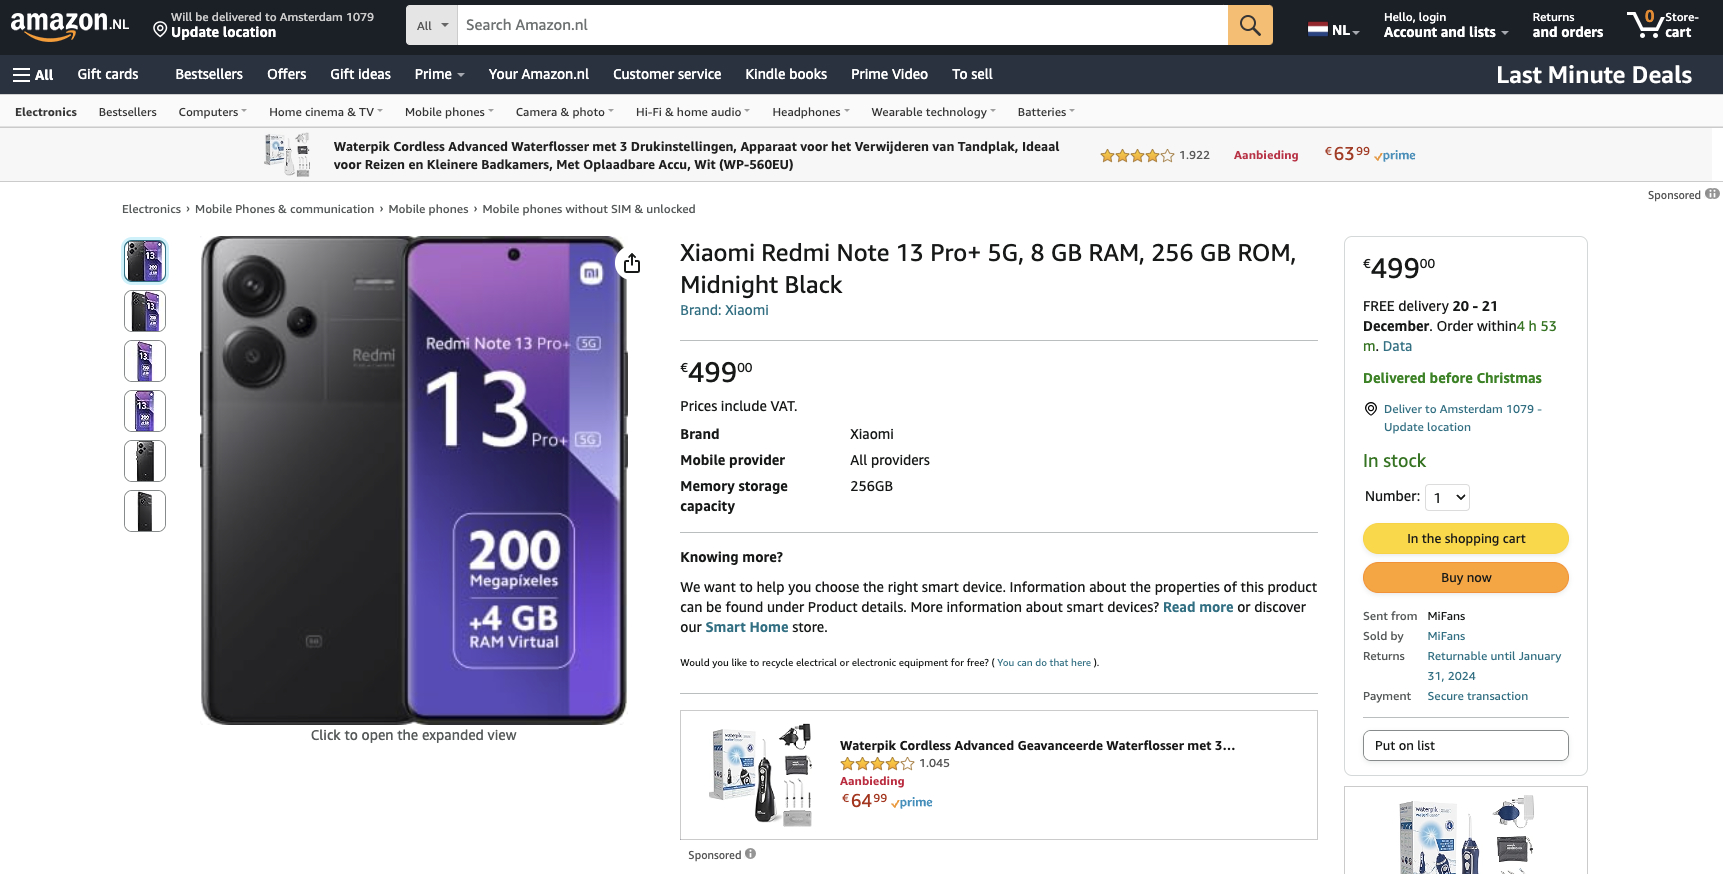 Redmi Note 13 Pro+ price